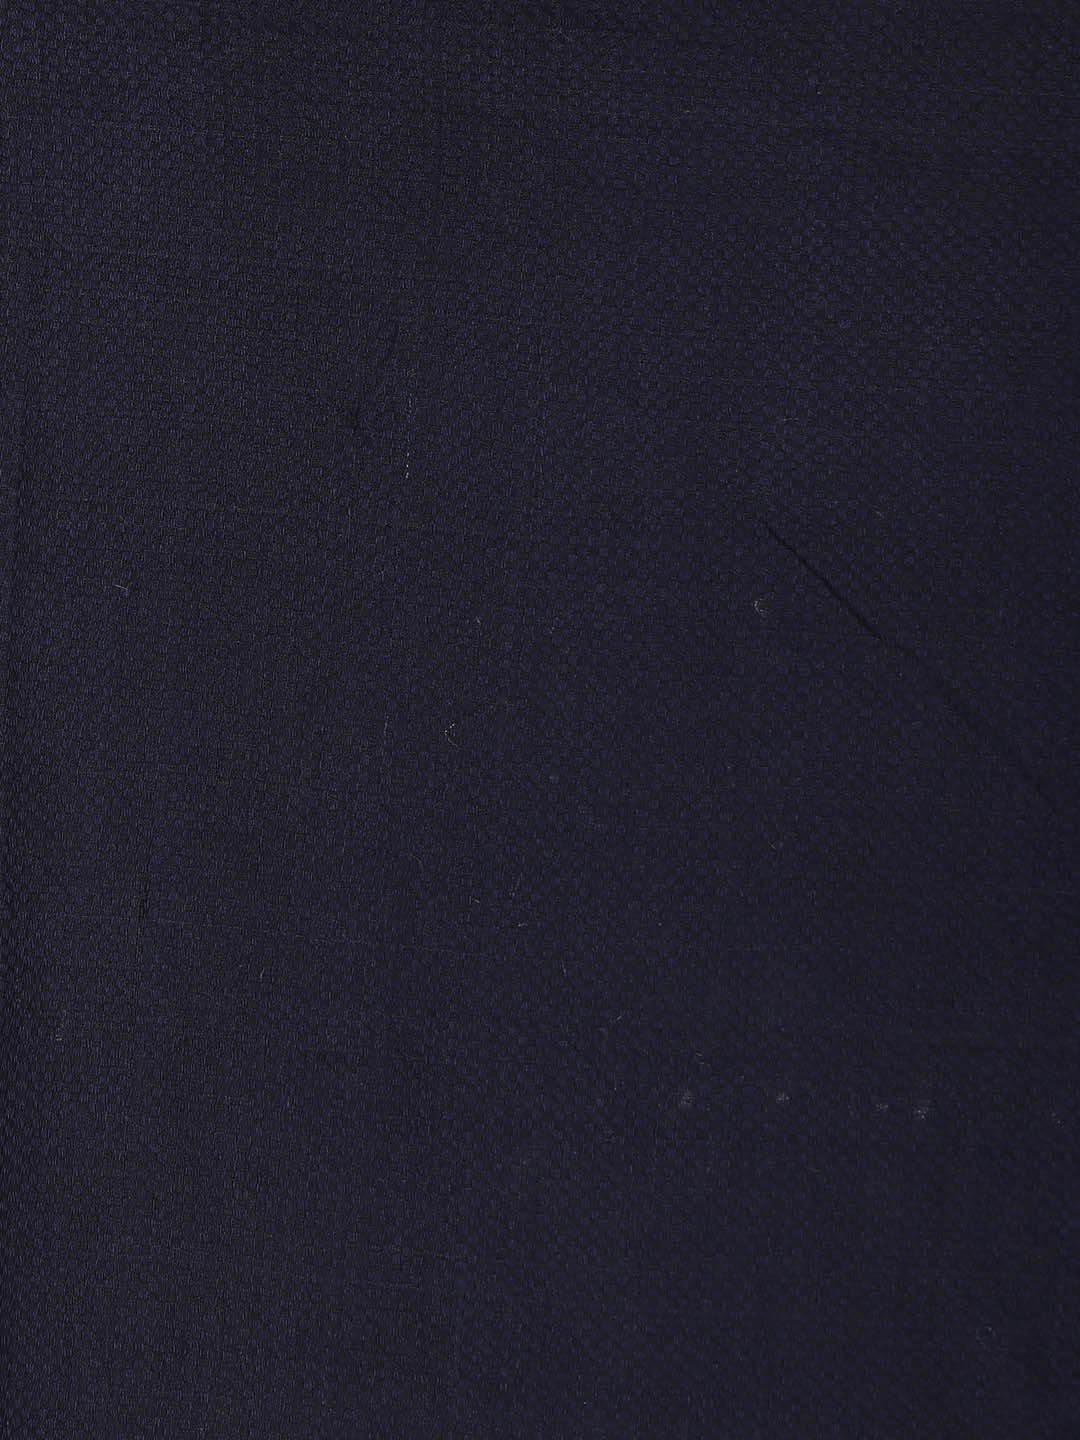 Indethnic Navy Blue Bengal Handloom Pure Cotton Saree Party Saree - Saree Detail View